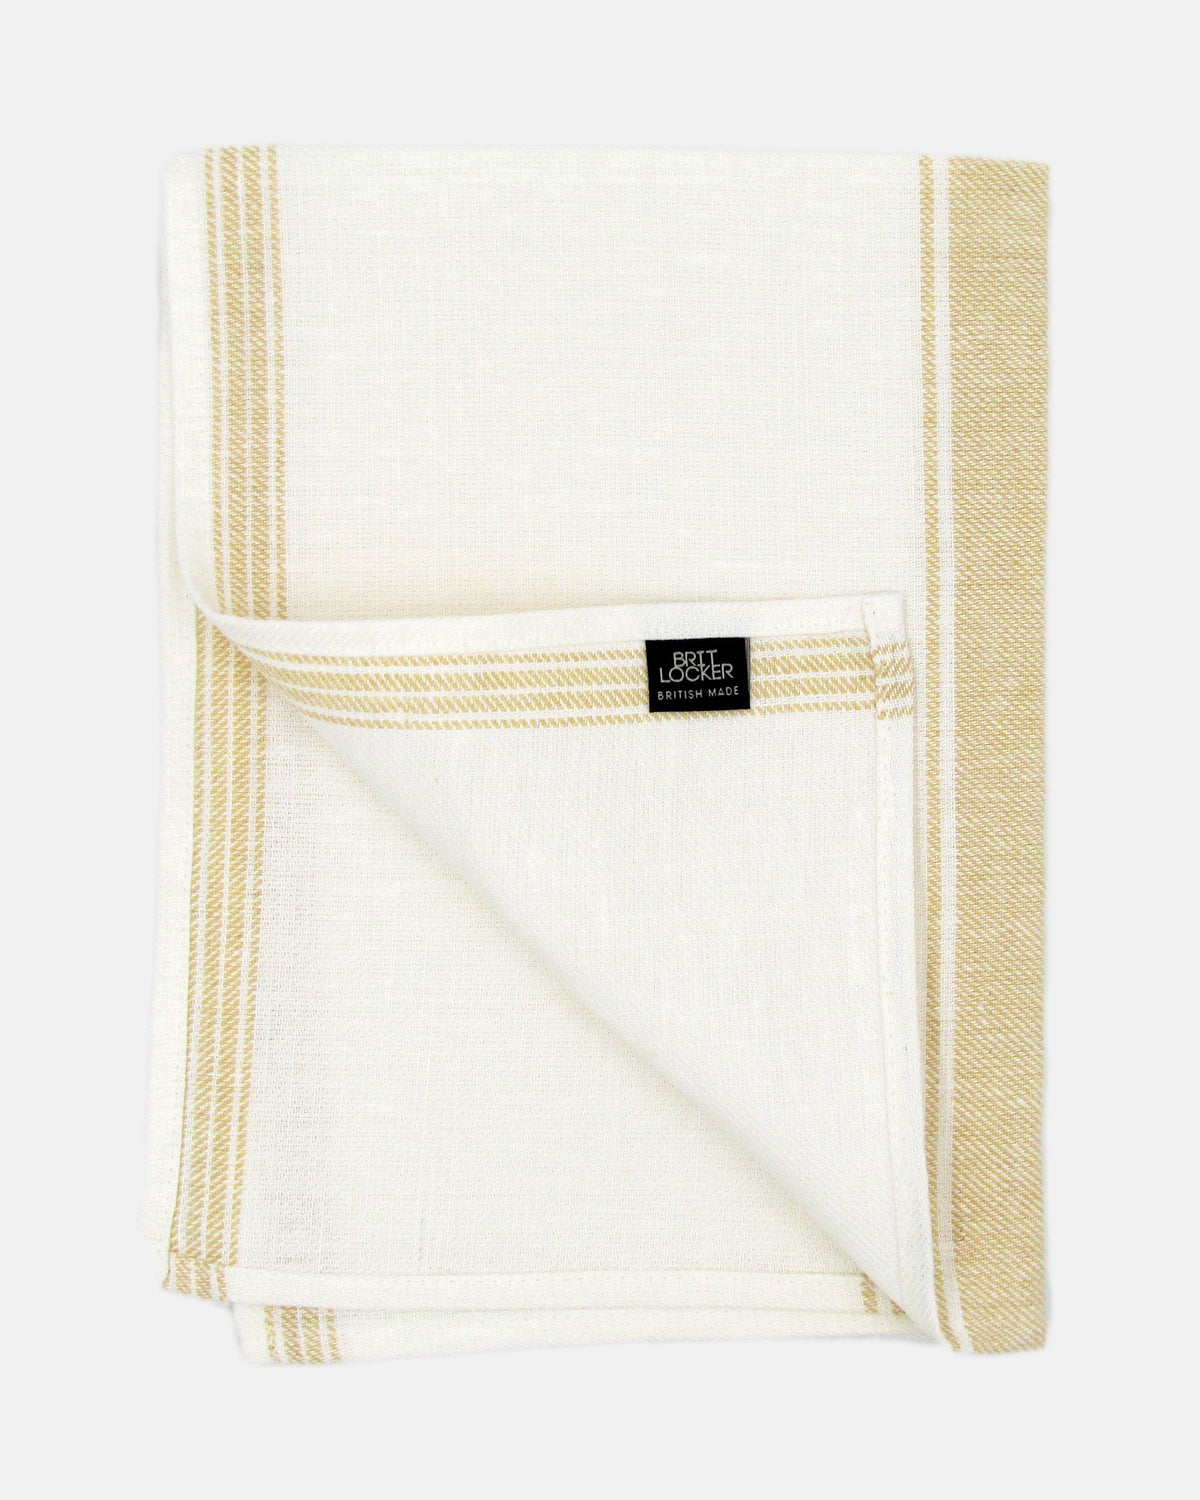 Peach Twill 100% Linen Tea Towel - BRIT LOCKER